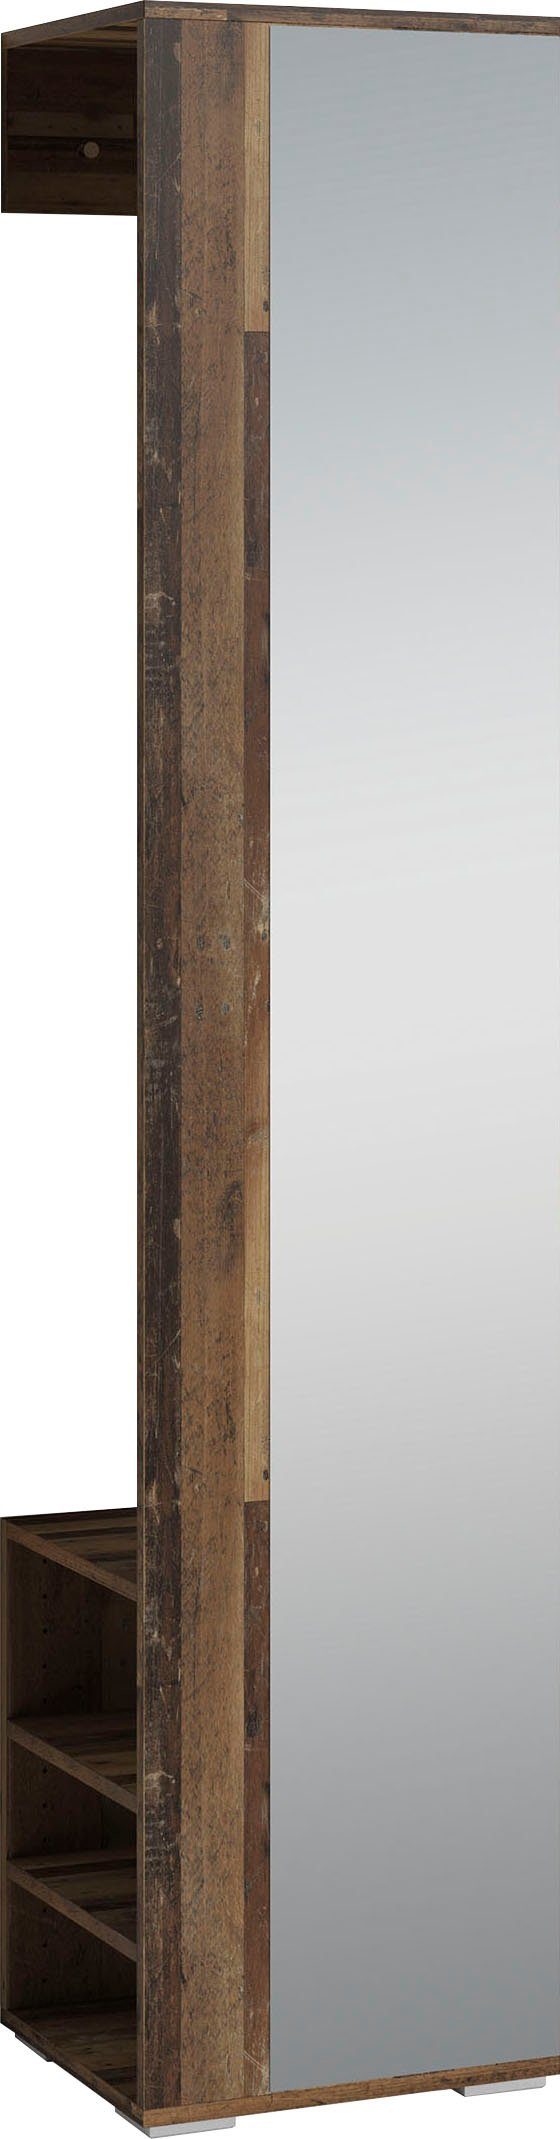 inosign kapstokpaneel ben breedte 40 cm, met spiegel en garderobestang (1 stuk) bruin